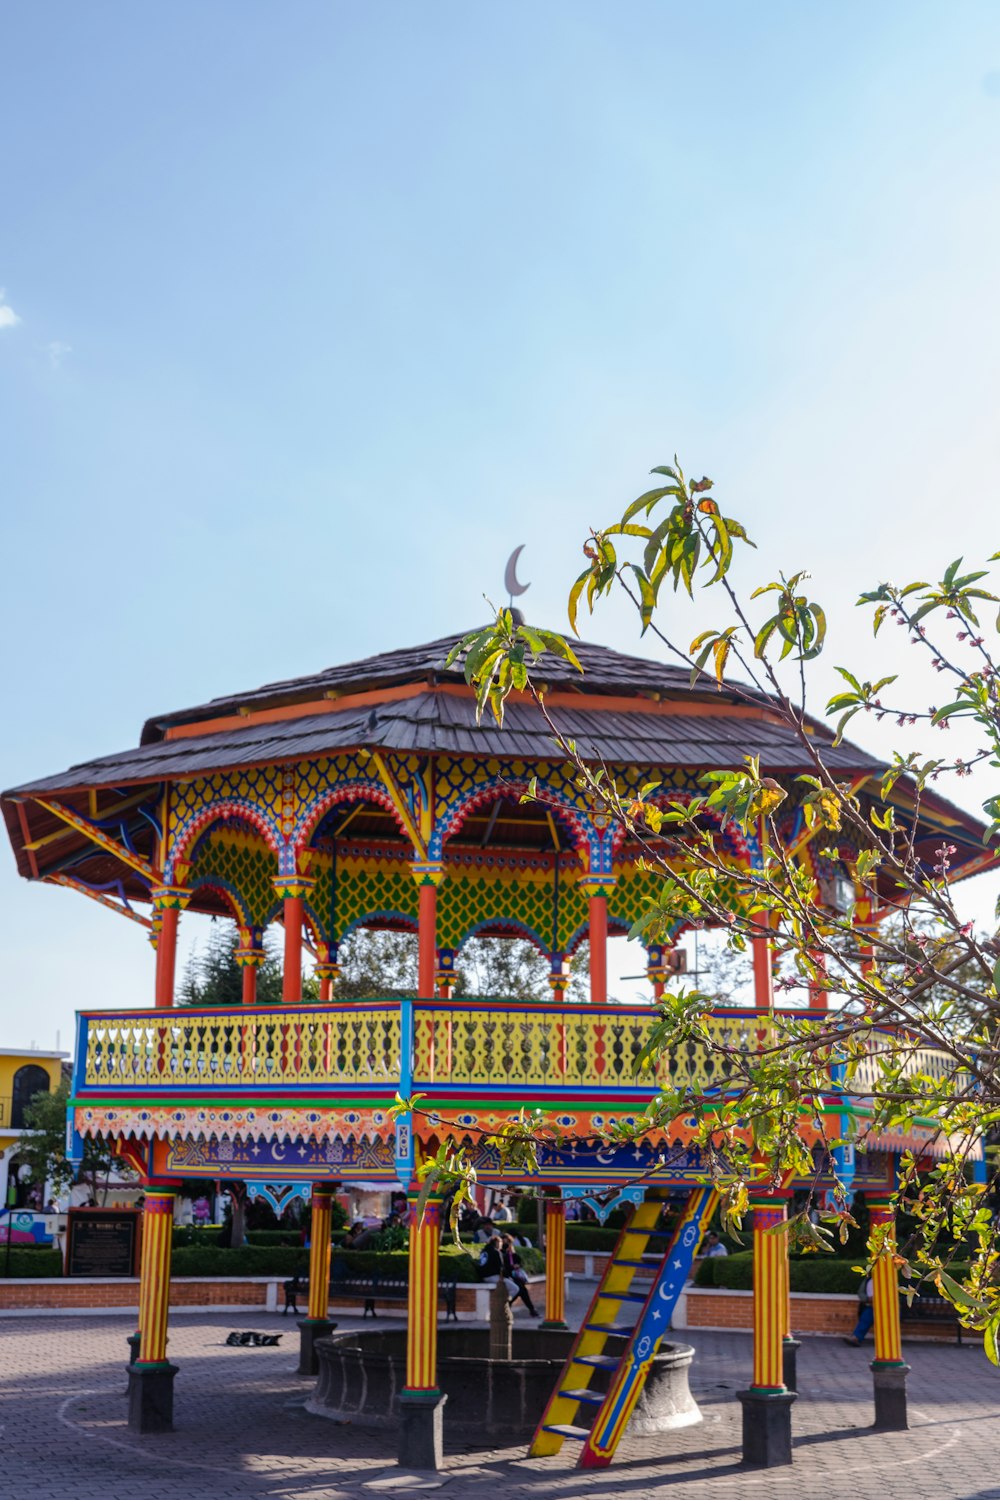 Ein farbenfroher Pavillon liegt mitten in einem Park